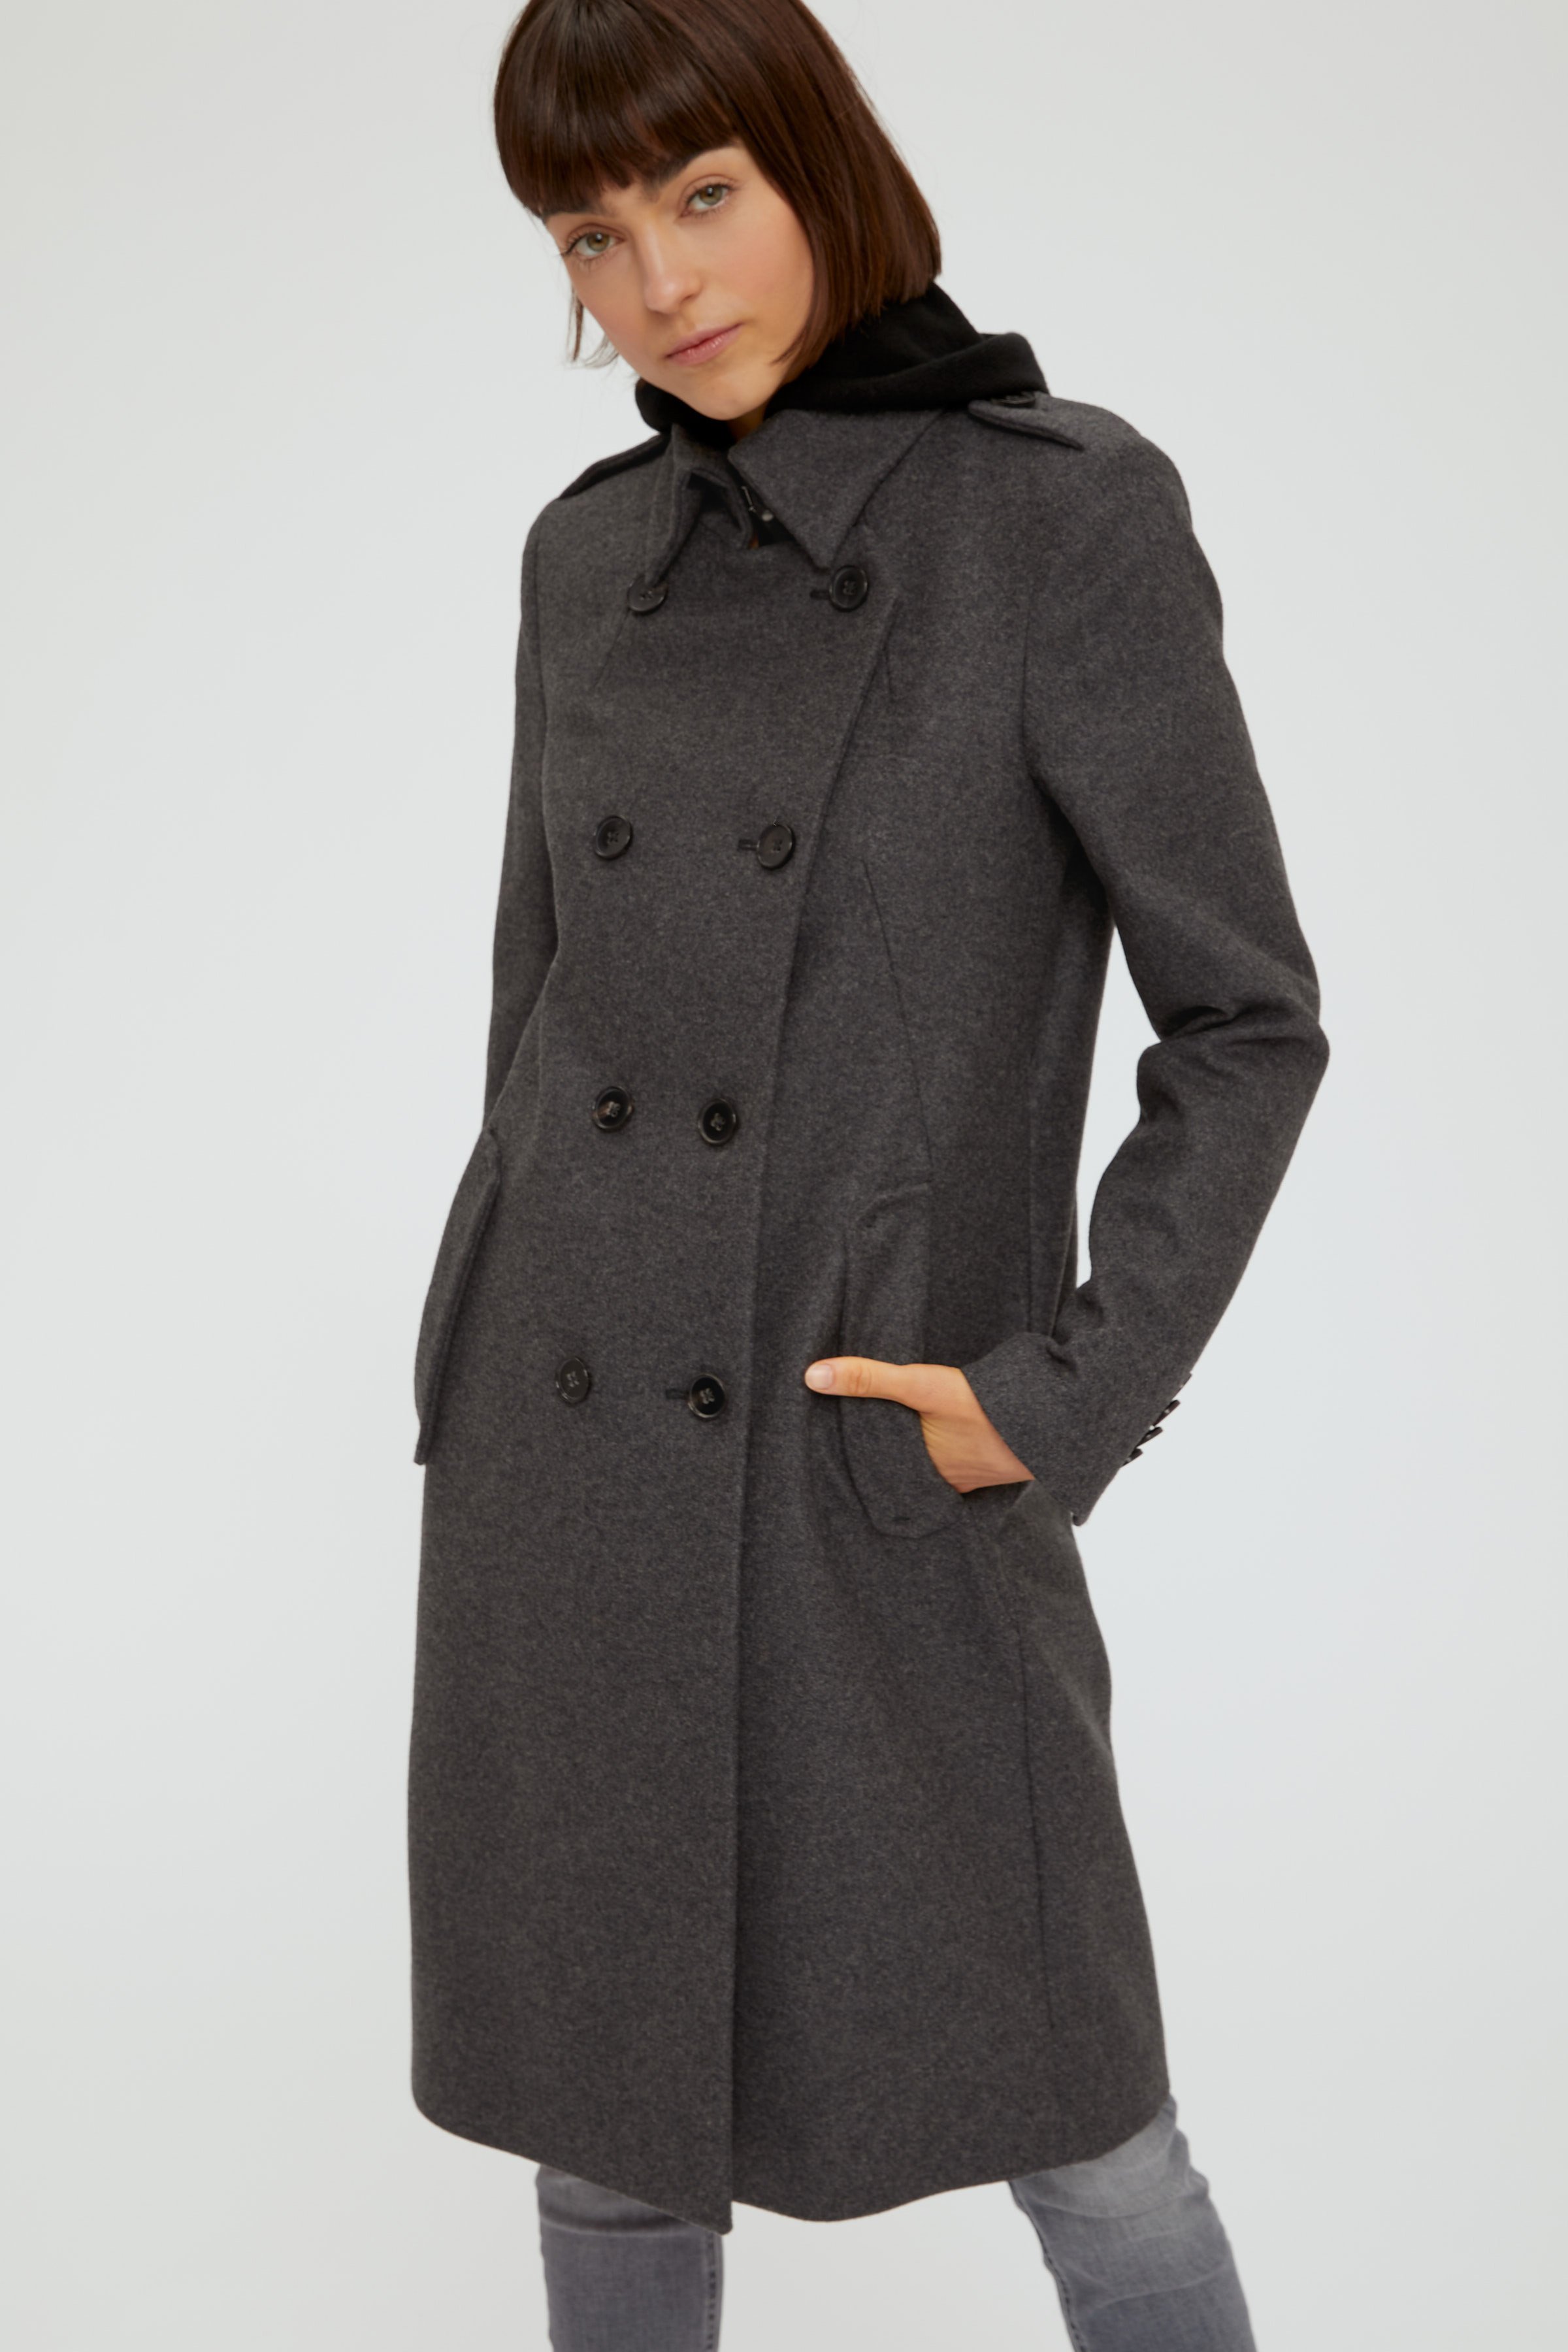 woolen uniform coat BUCKEY online at DRYKORN